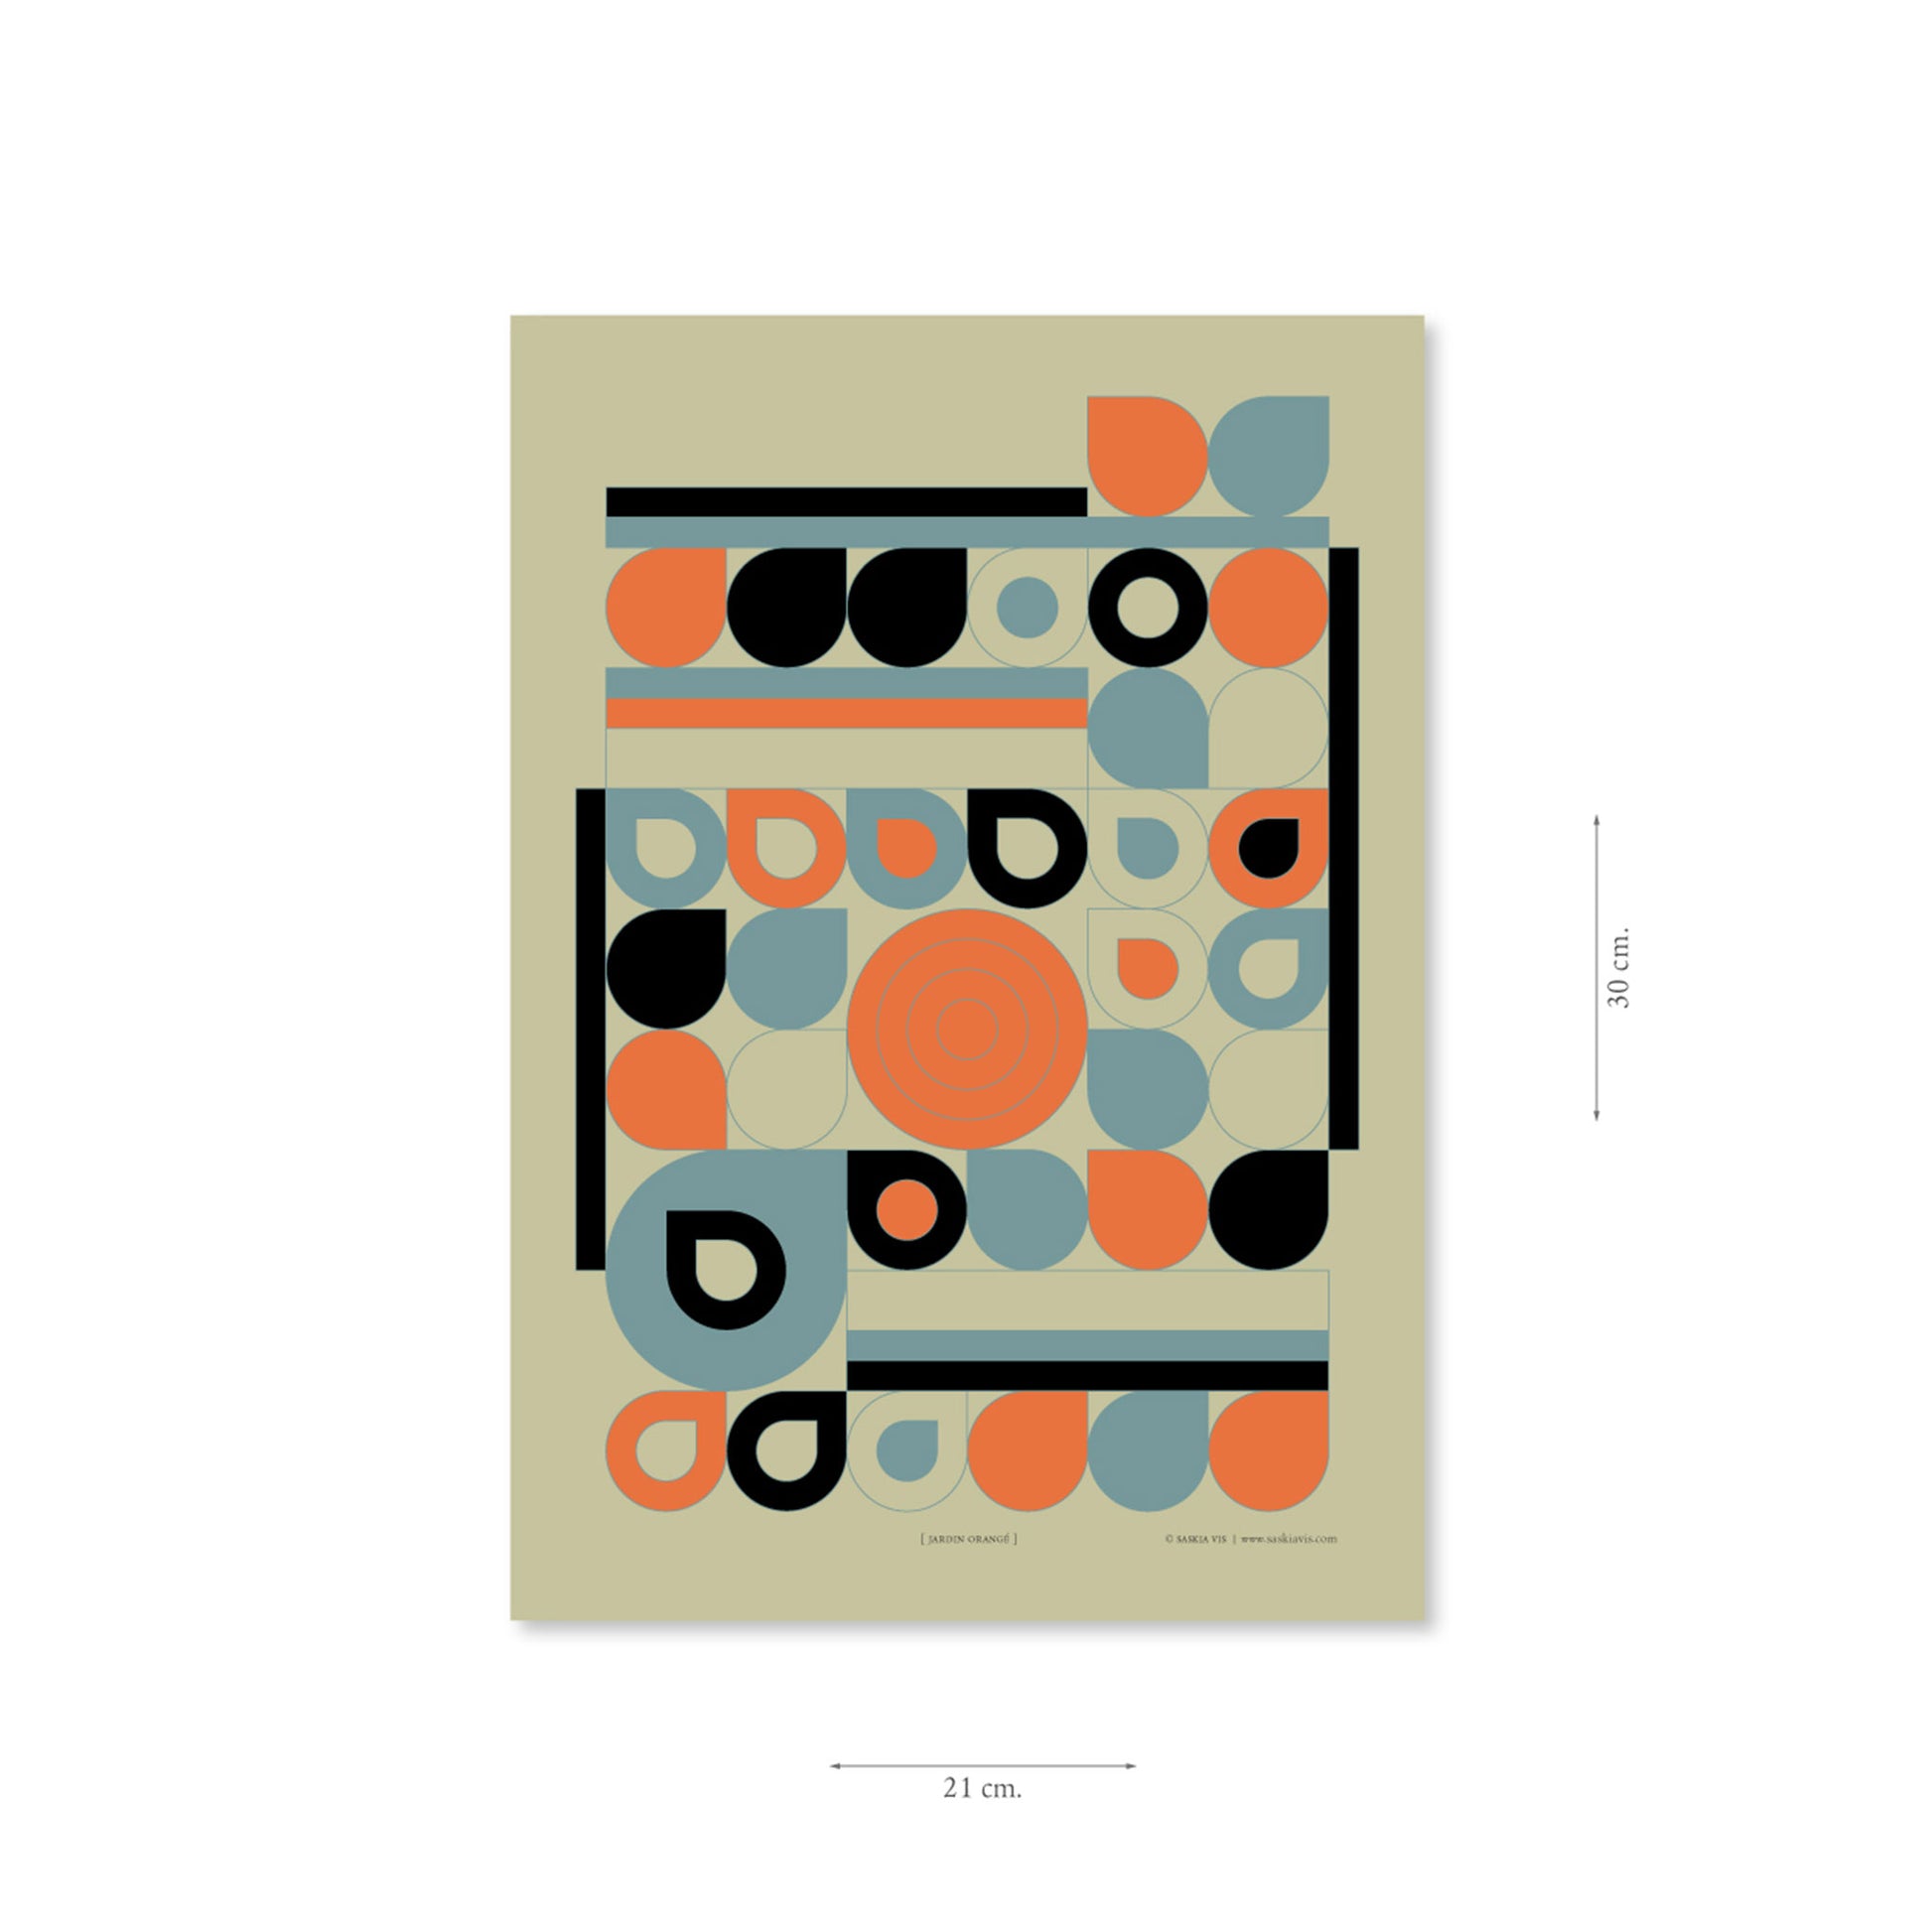 Productafbeelding poster "jardin orange" met aanduiding van het formaat erop weergegeven 21 x 30 cm